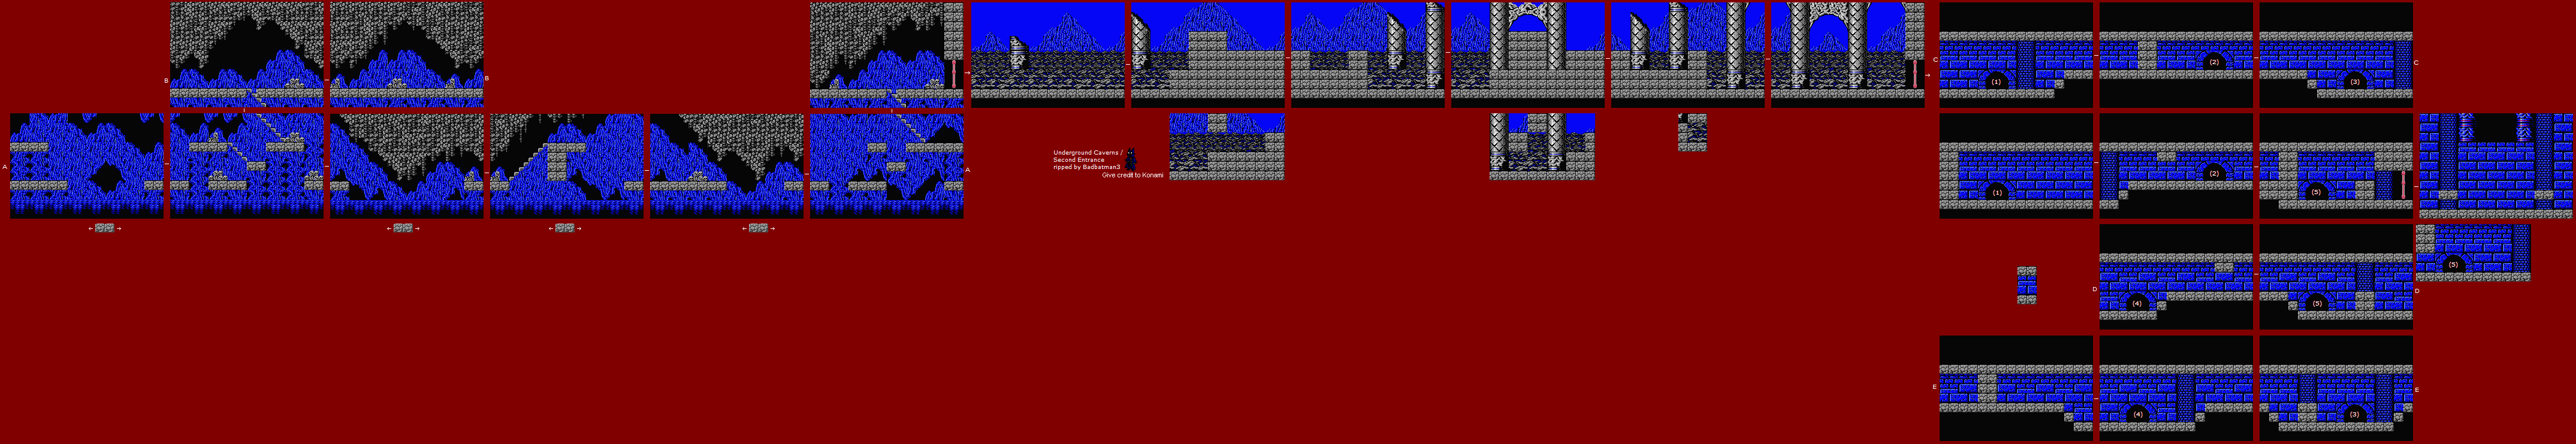 Vampire Killer (MSX2) - Stage 4: Underground Cave